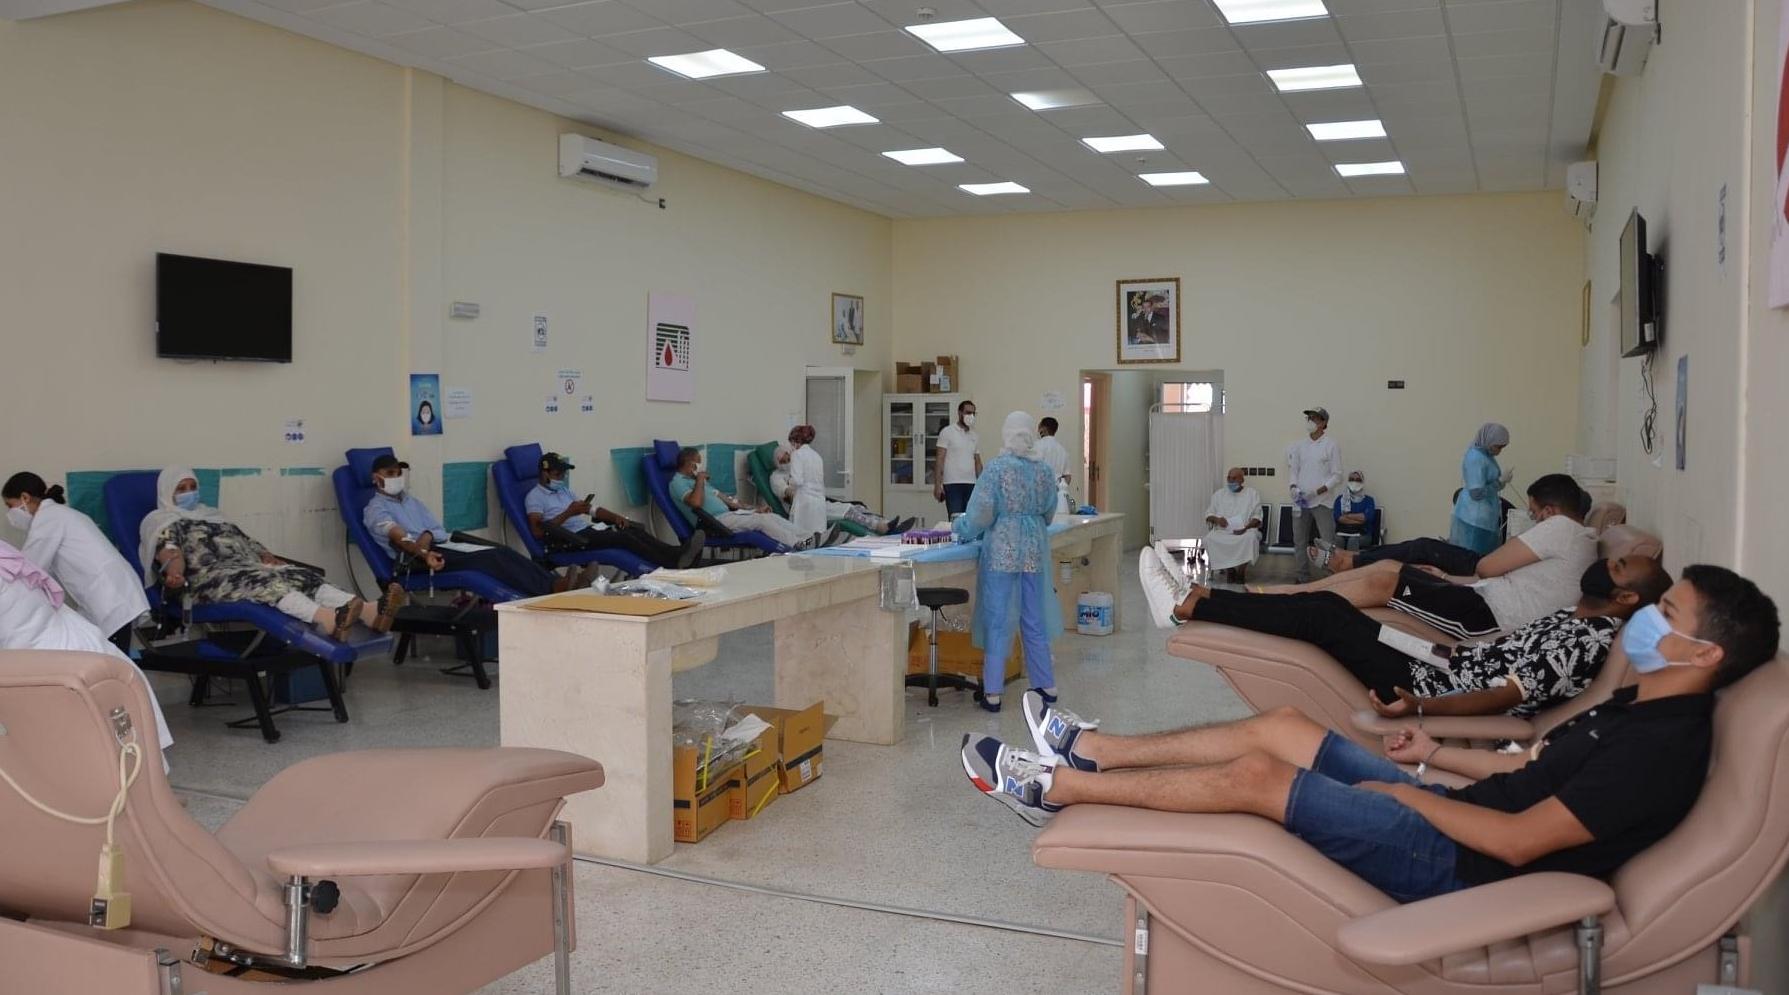 Les donneurs de sang à groupes rares se mobilisent à Marrakech